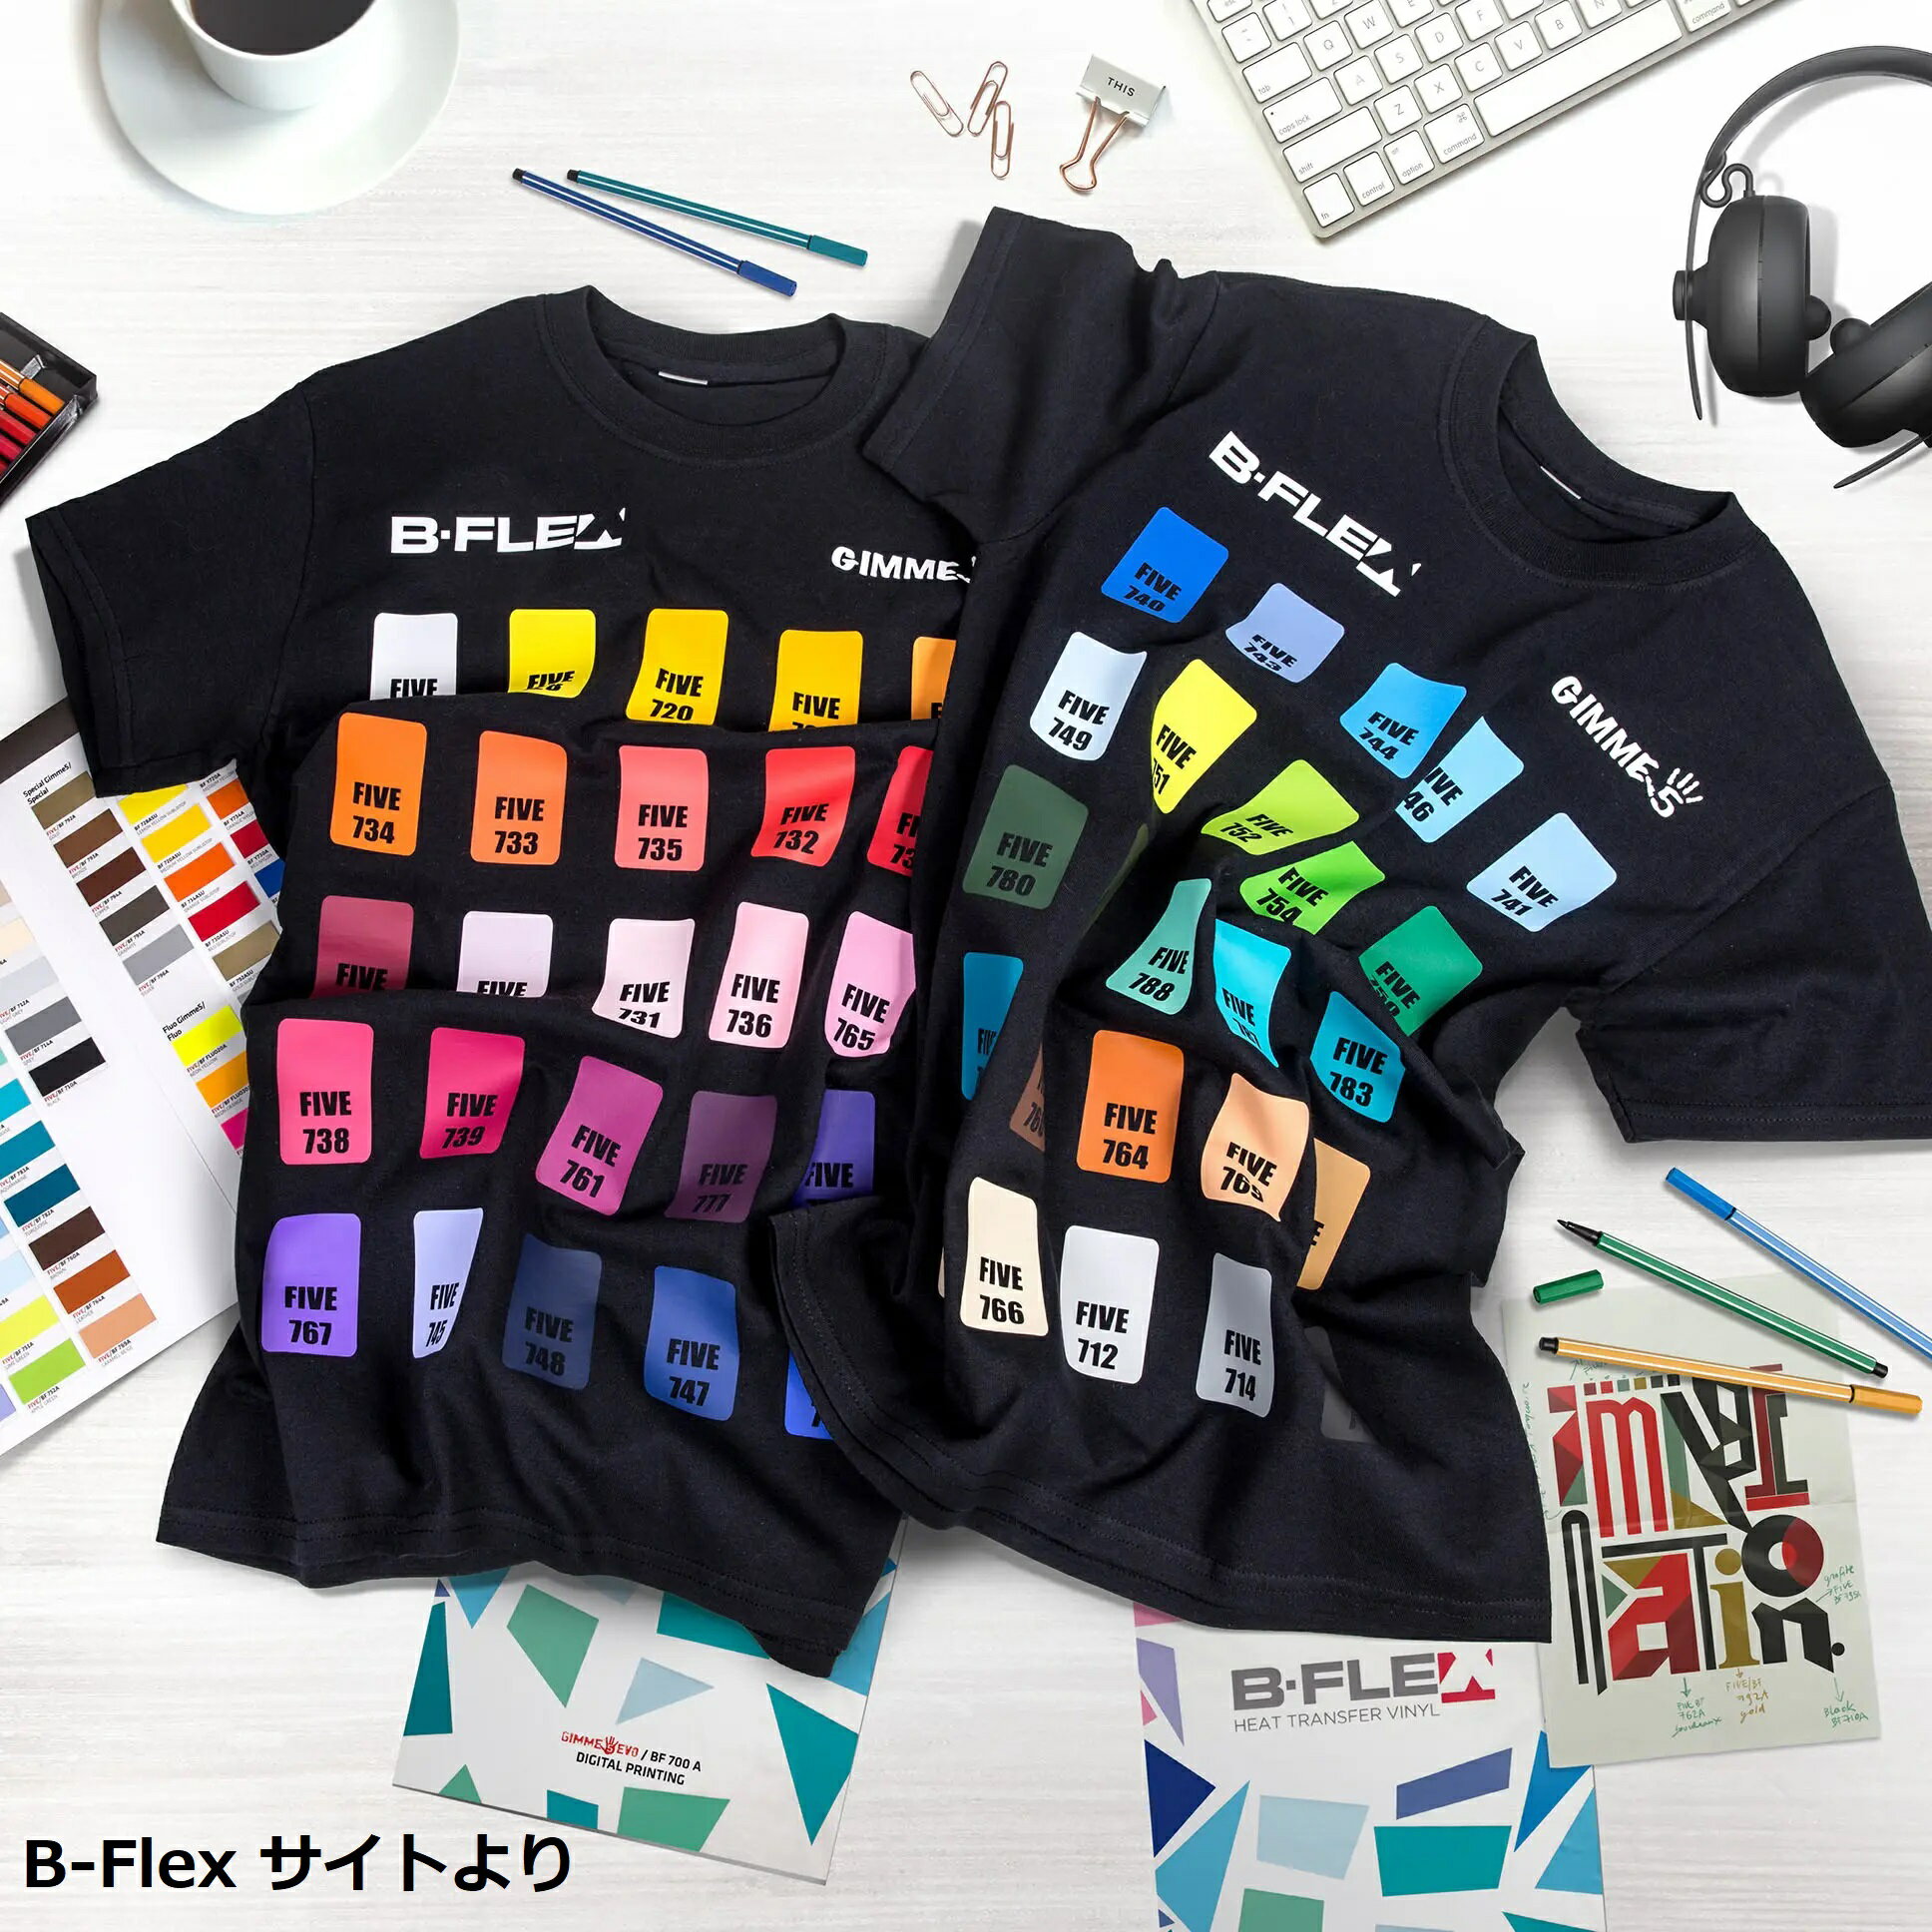 衣類用UV転写シート BーFlexDTF UVプリンターで衣類などに転写印刷 日本初 1M巻き お試し販売 UV-DTF 名入れ革命